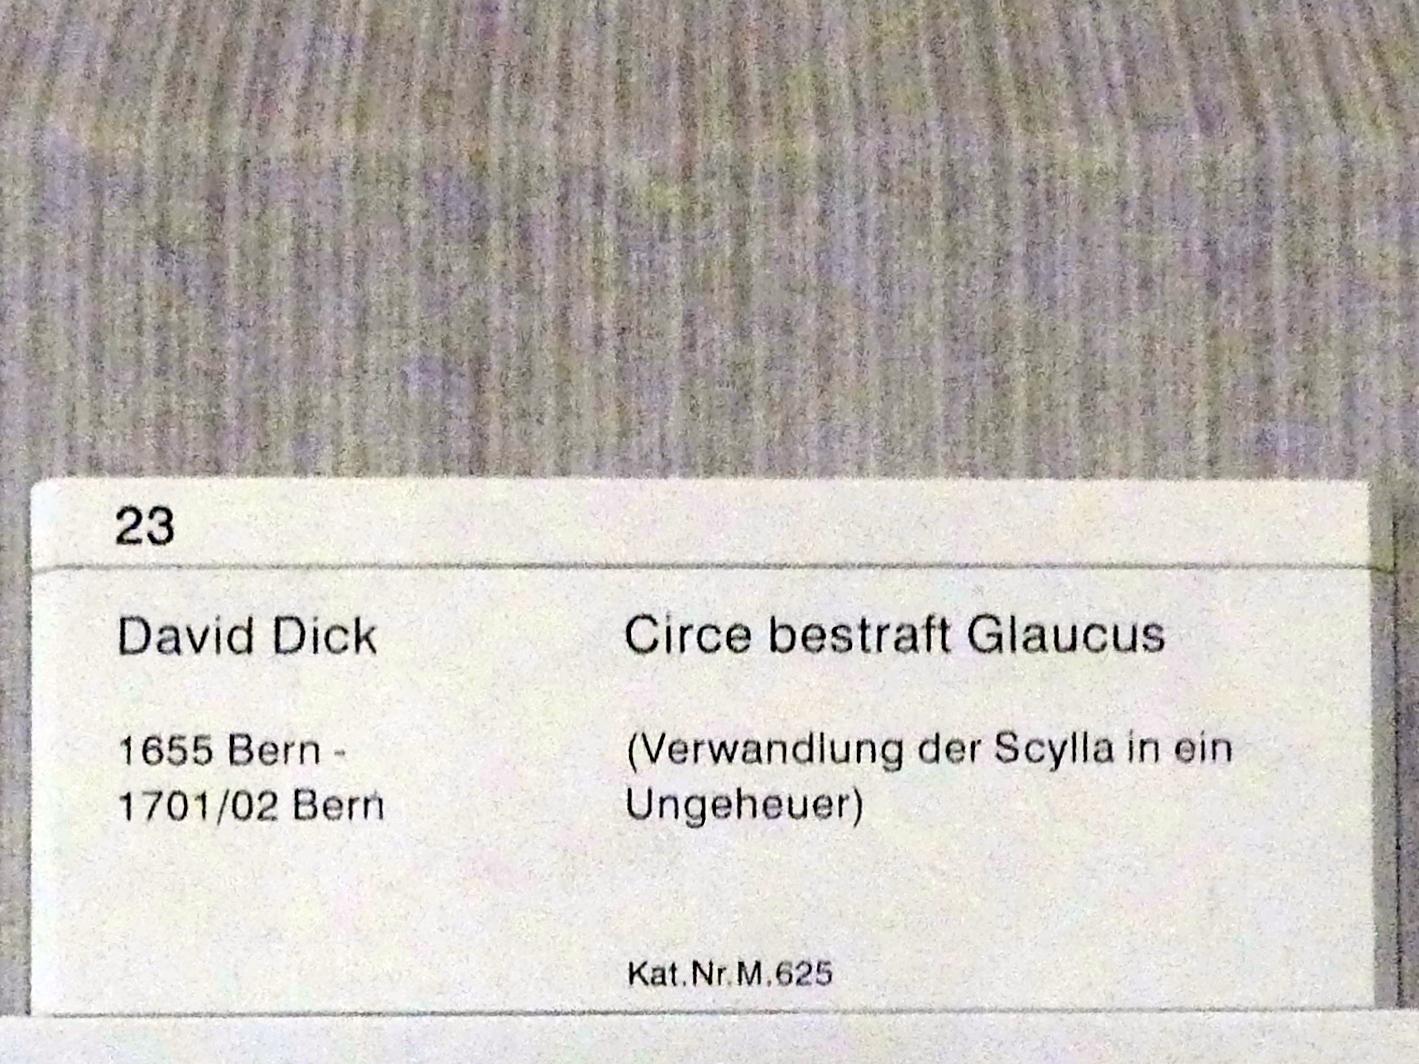 David Dick (Undatiert), Circe bestraft Glaucus (Verwandlung der Scylla in ein Ungeheuer), Berlin, Gemäldegalerie ("Berliner Wunder"), Kabinett 34, Undatiert, Bild 2/2